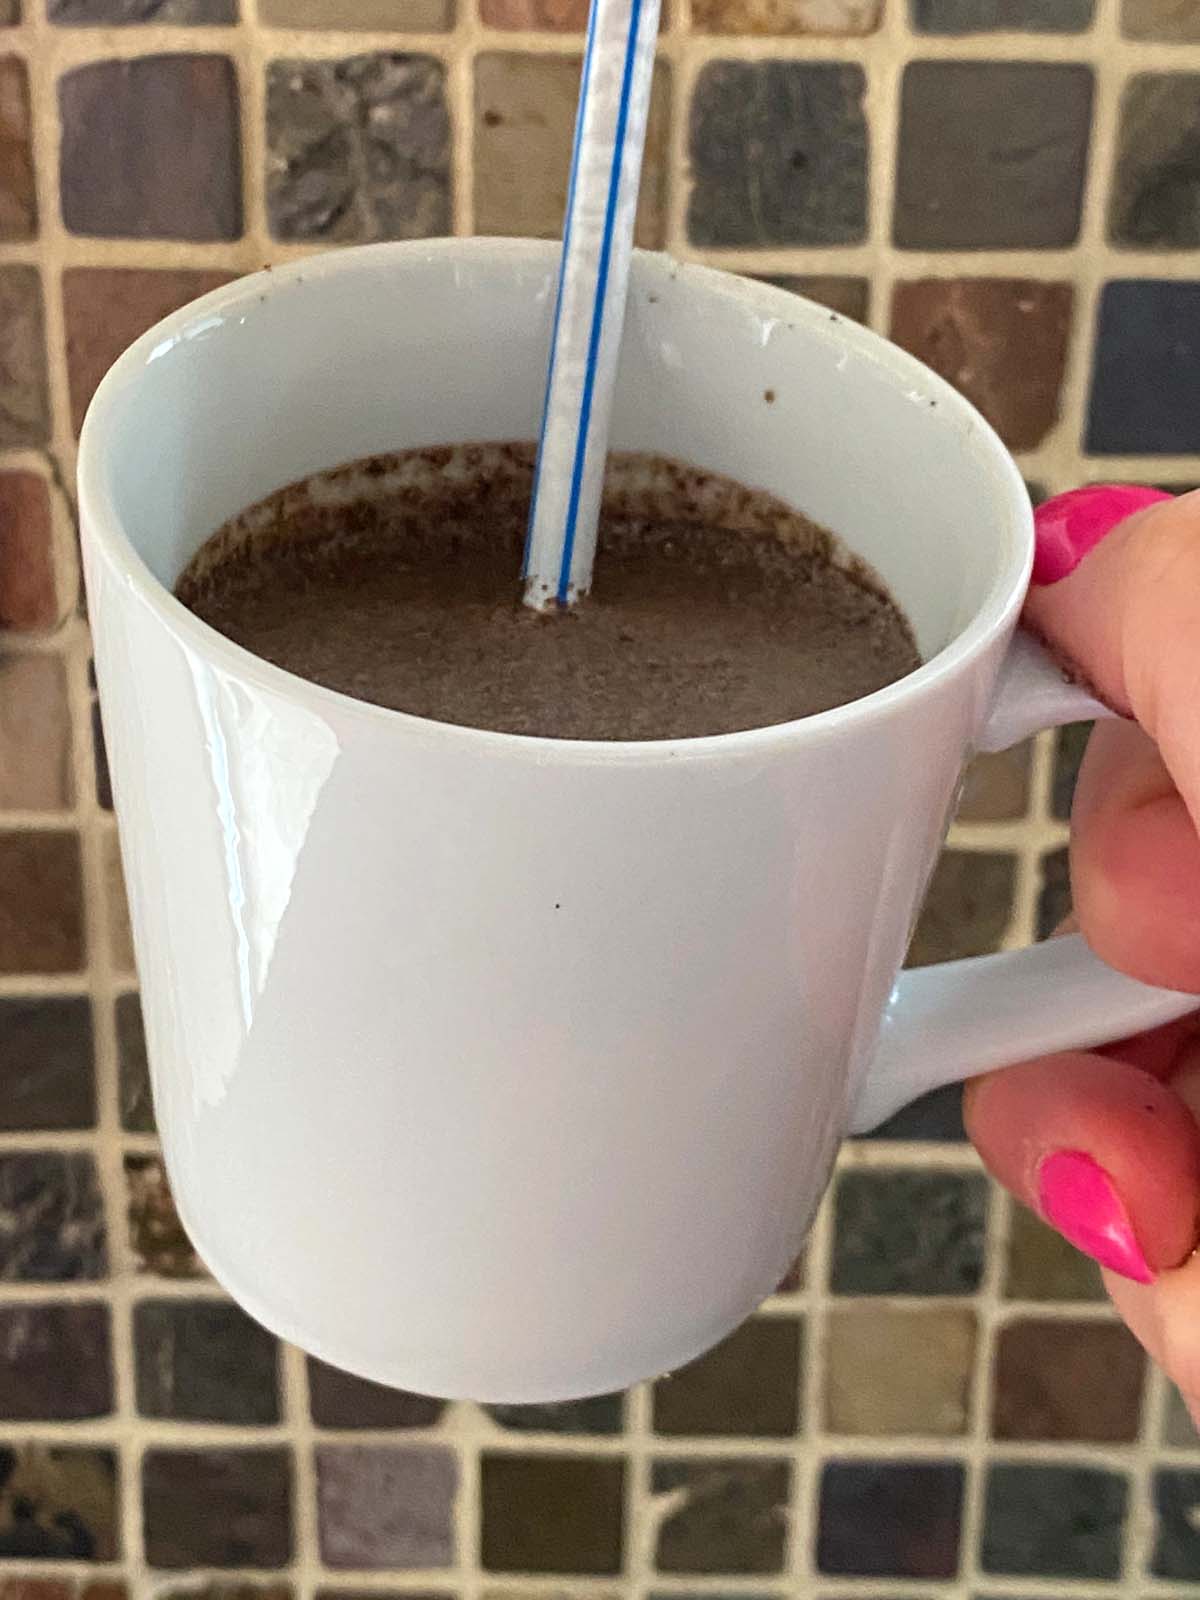 Oreo milkshake in a mug with a straw.